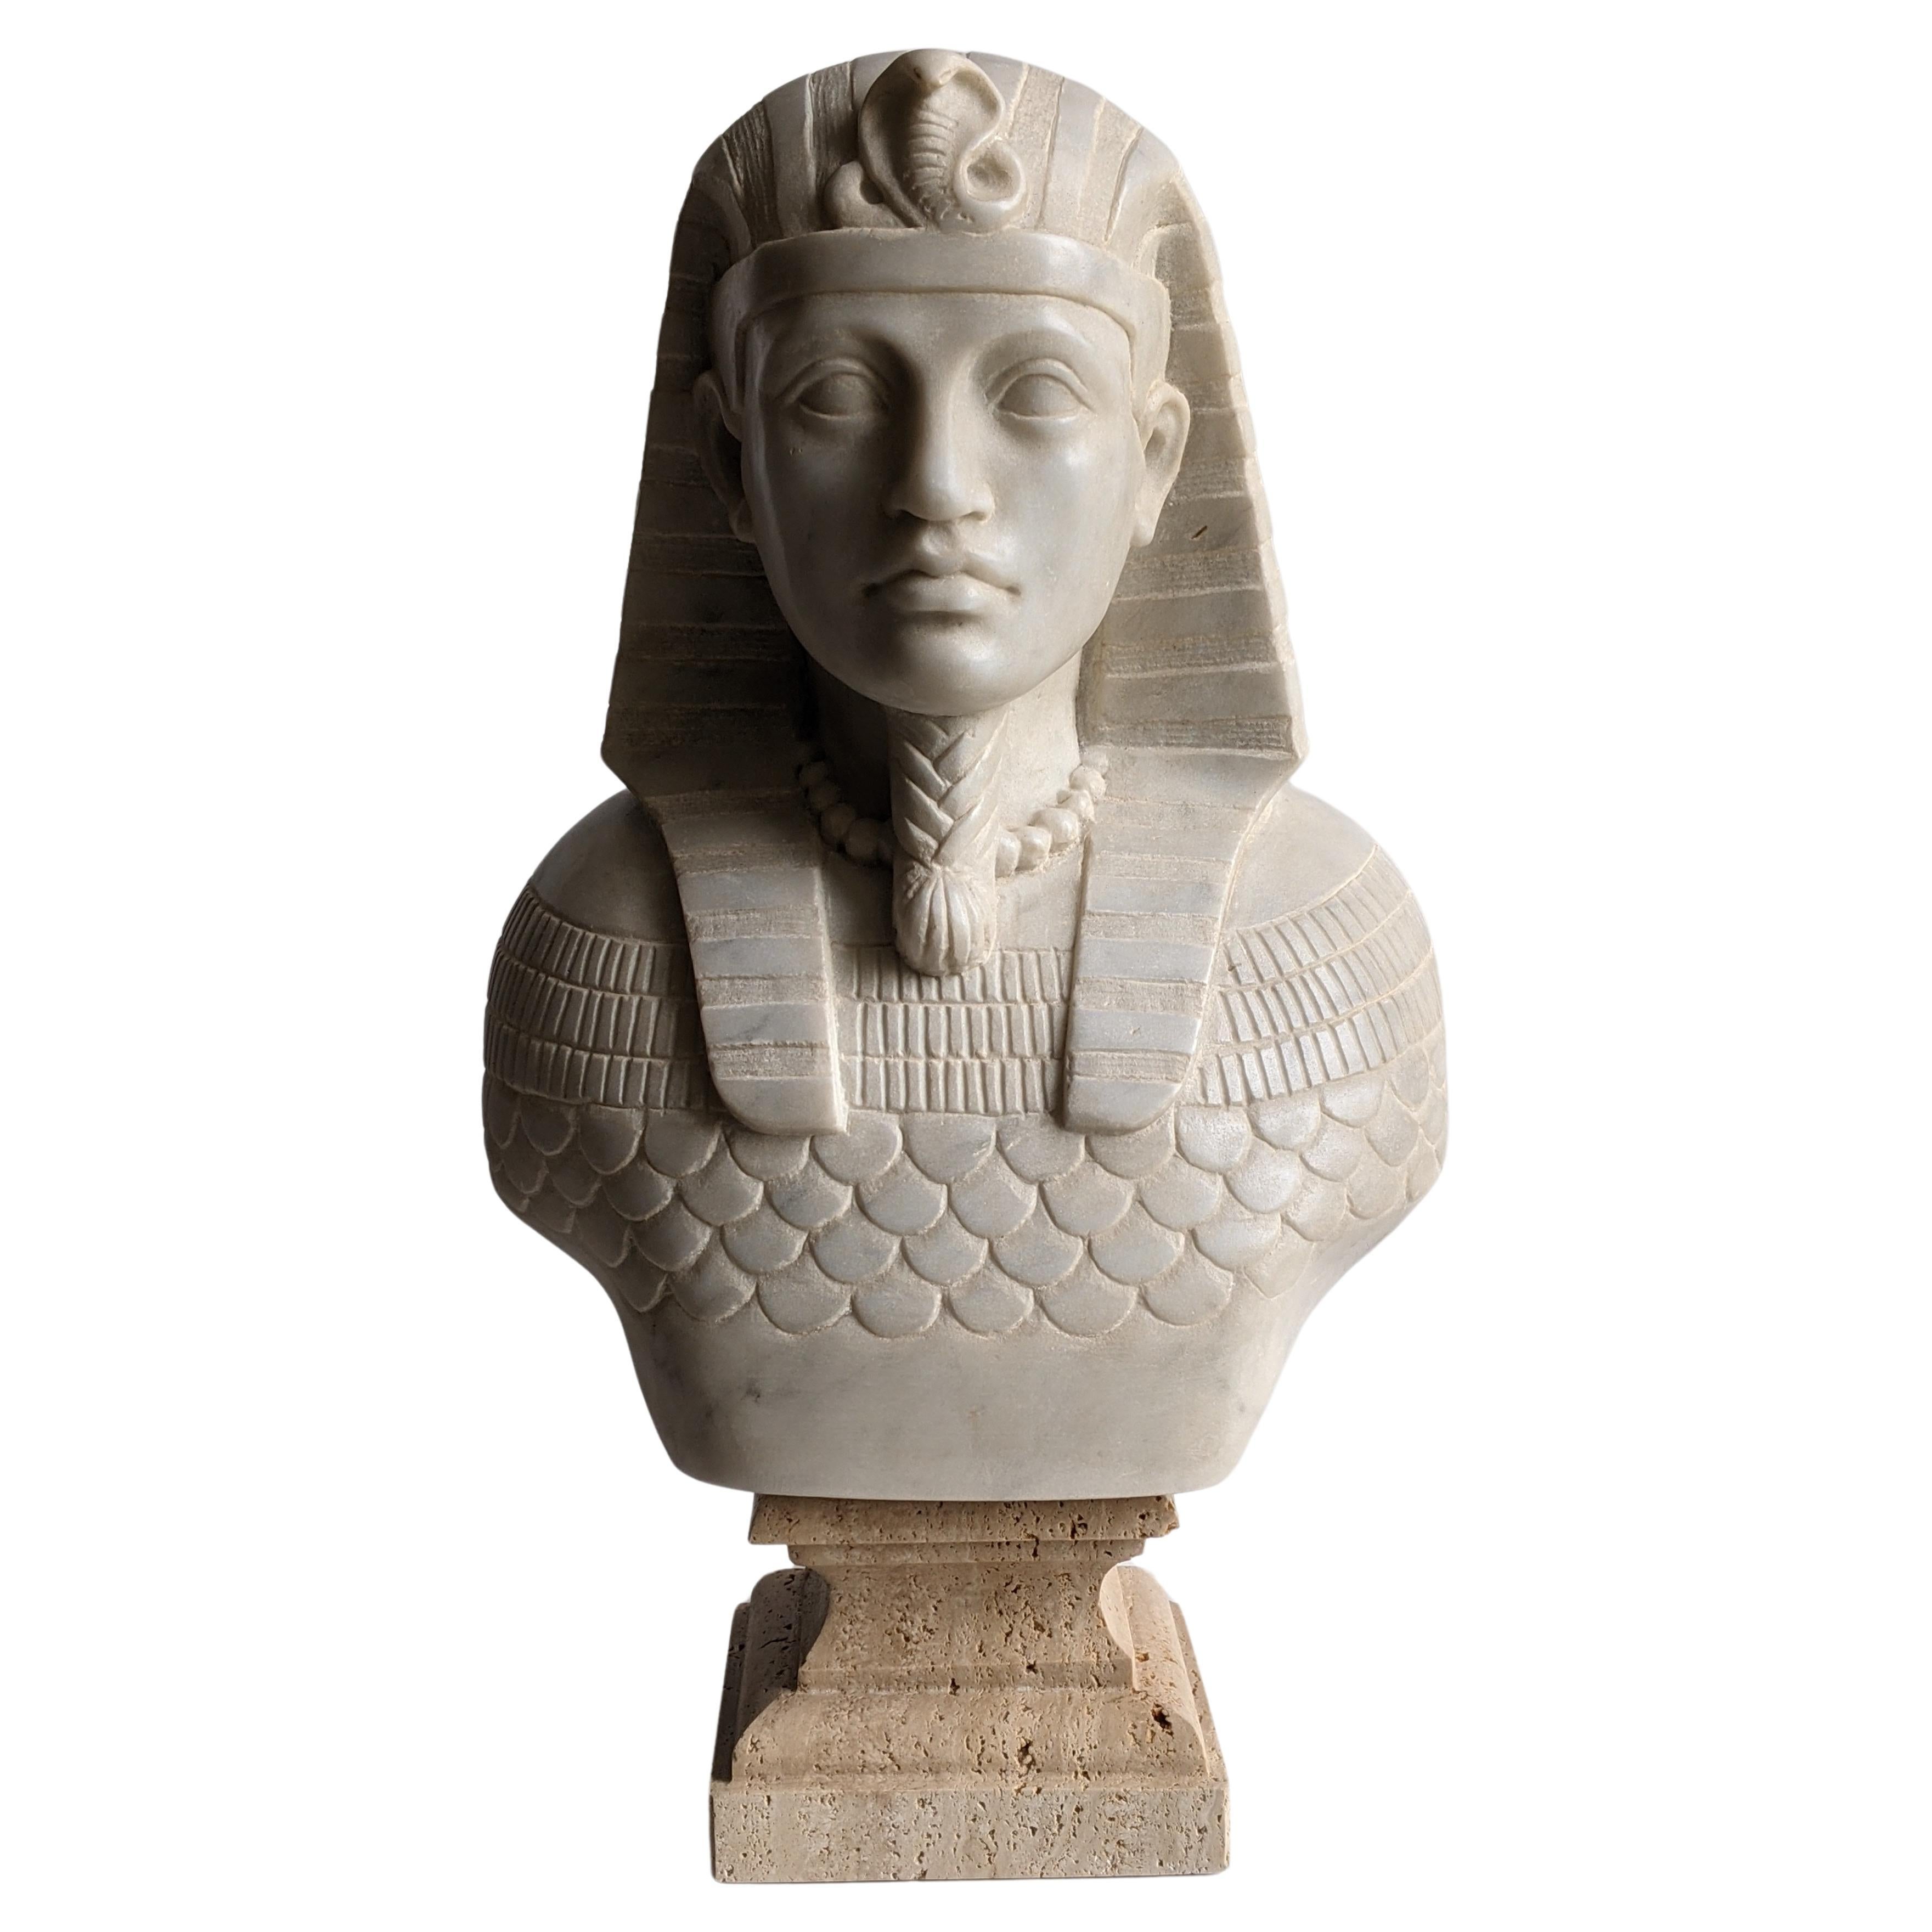 Büste eines ägyptischen Pharaos, gemeißelt auf weißem Carrara-Marmor